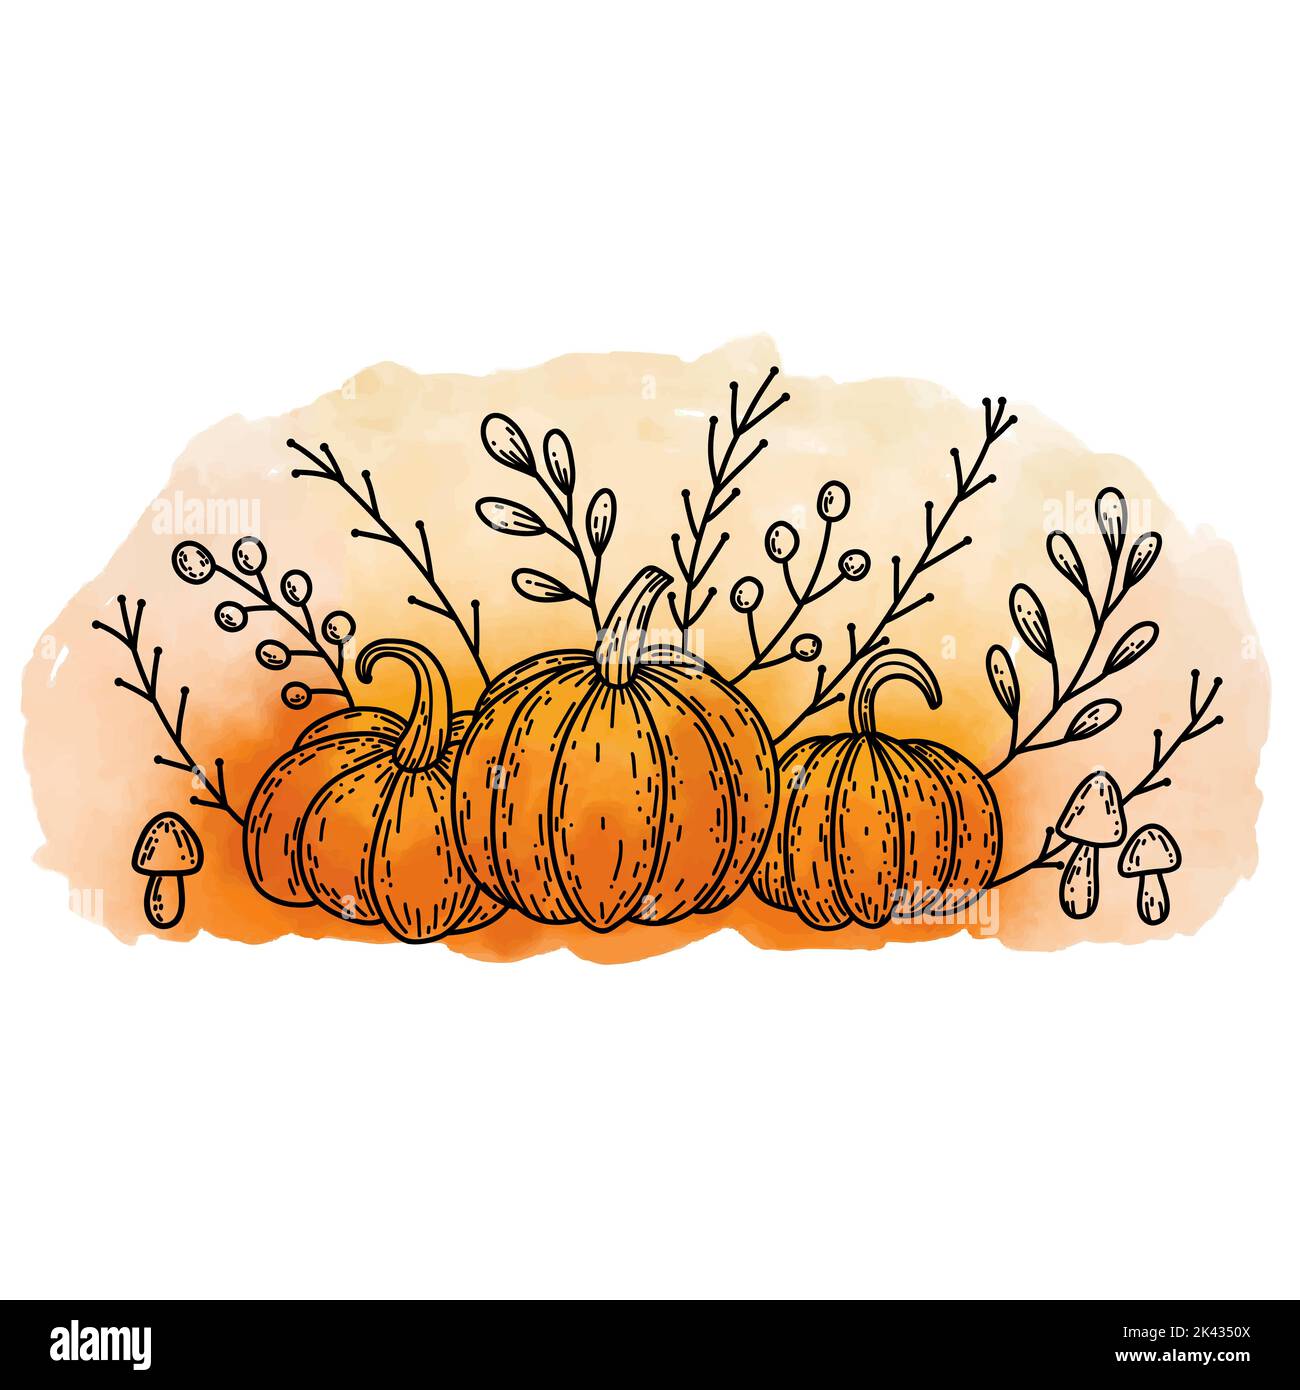 Automne agréable encore la vie avec le contour de doodle citrouilles noires, champignons, feuilles et branches sur fond orange coloré aquarelle pour Thanksgiving Illustration de Vecteur